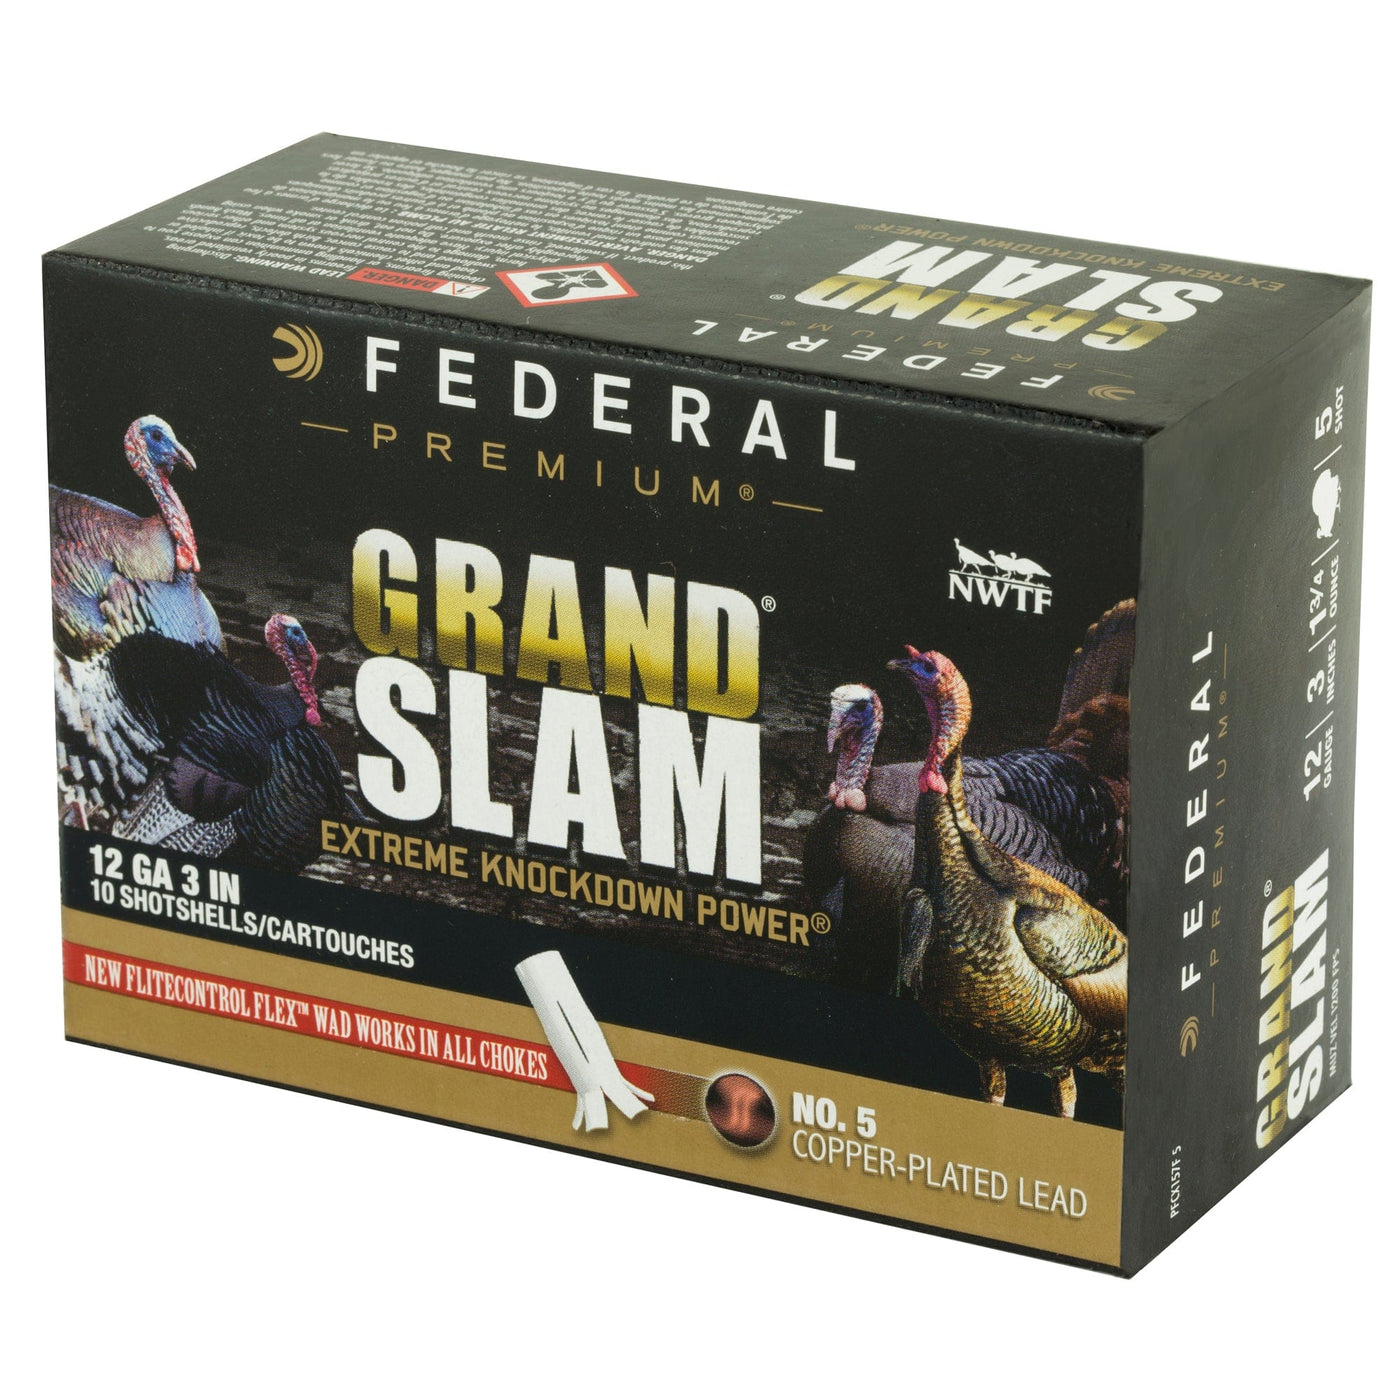 Federal Fed Grand Slam 12ga 3" #5 1.75oz 10/ Ammunition